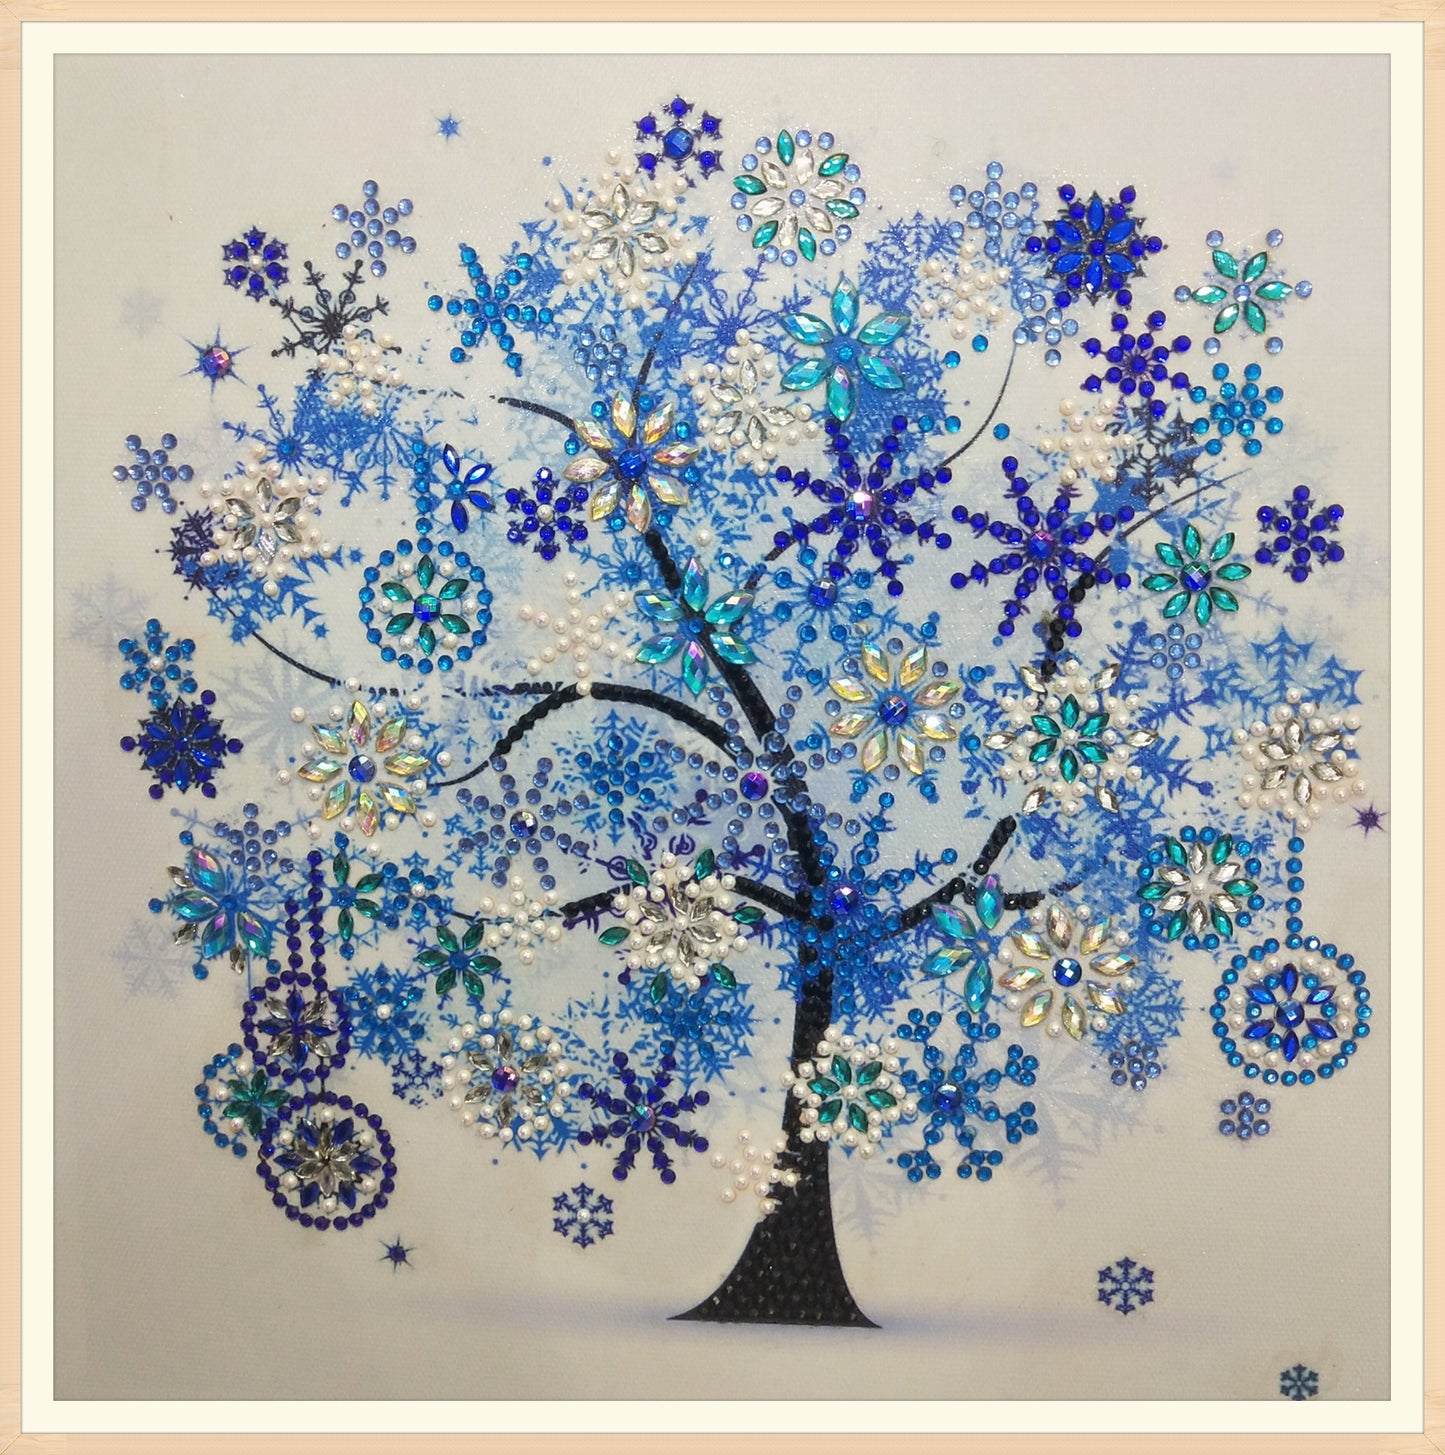 Four seasons tree winter | Special Shaped Diamond Painting Kits